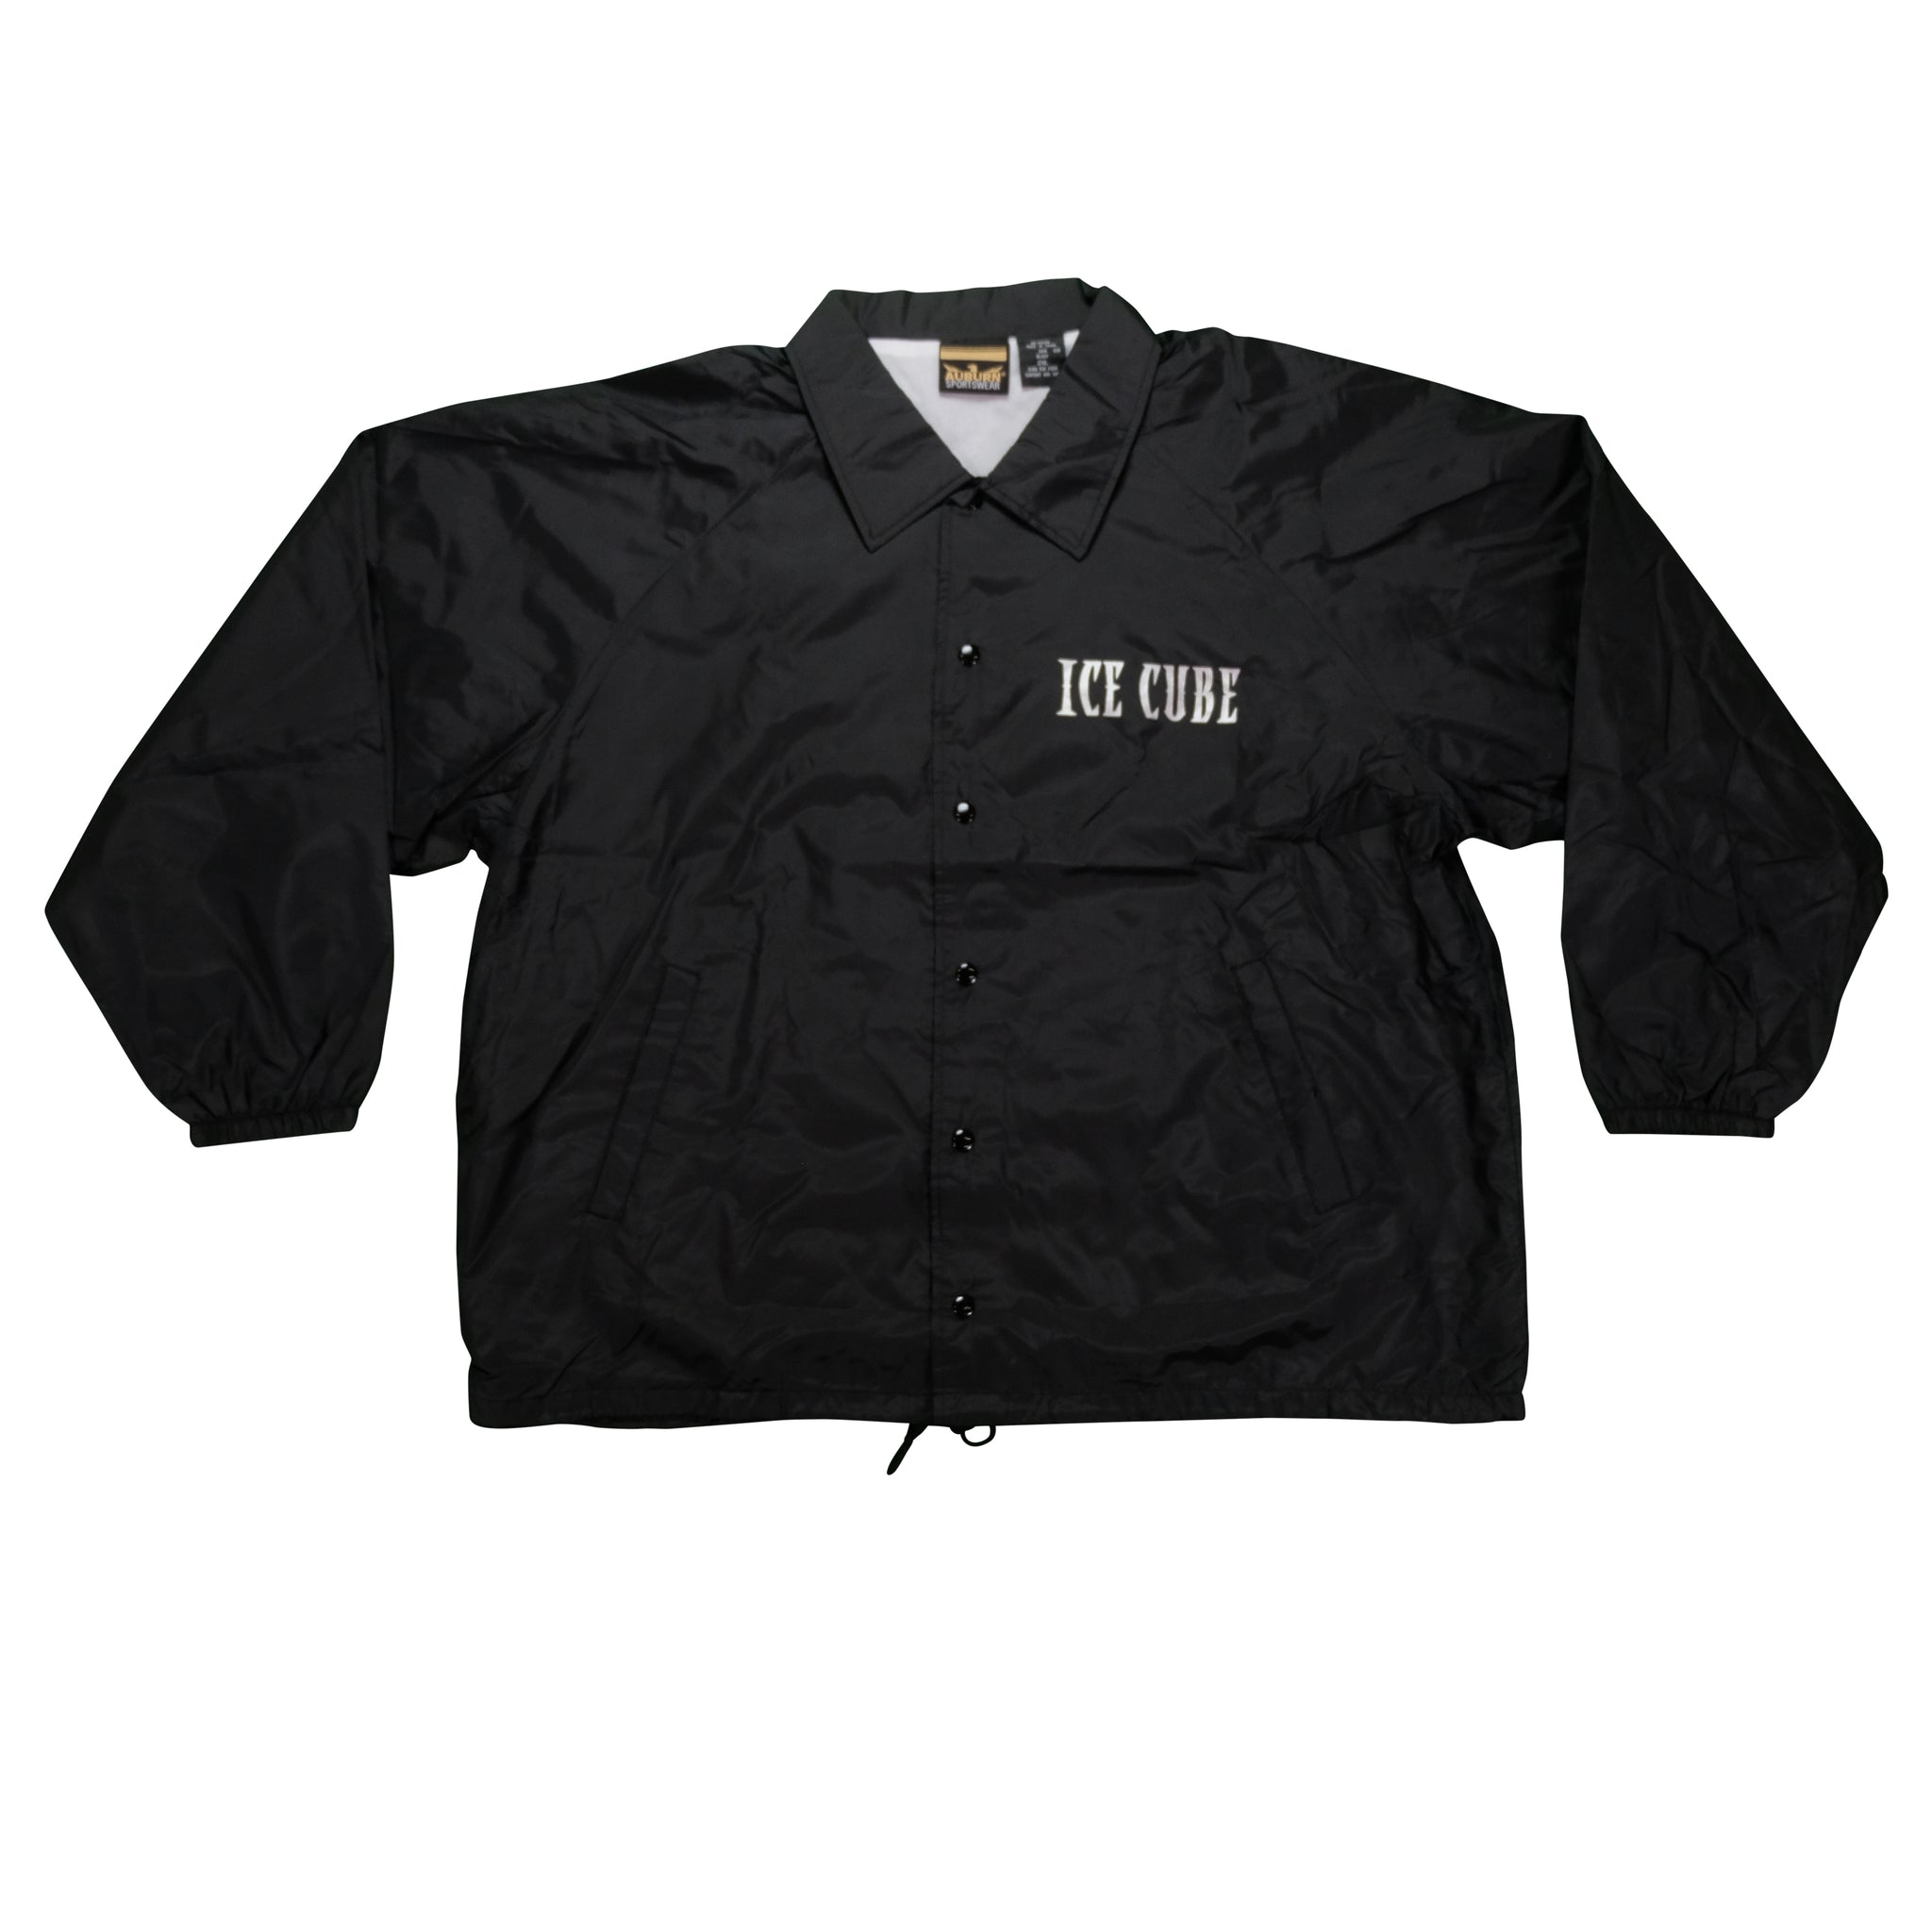 Vintage Ice Cube NWA Coaches Jacket on Auburn Sportswear | Reset ...